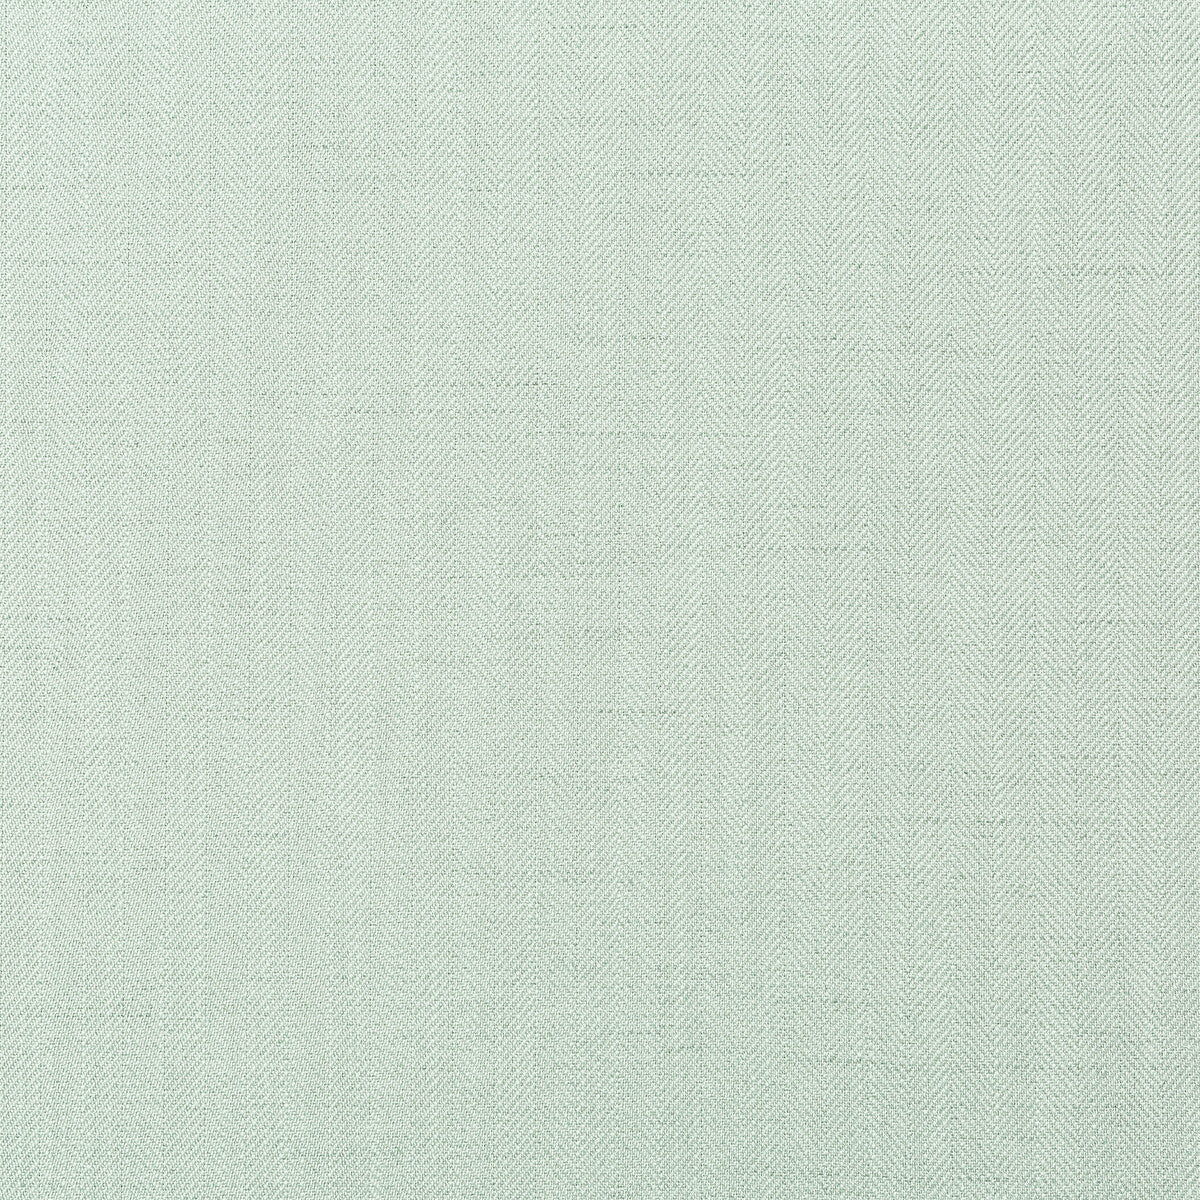 Kravet Basics fabric in 35782-13 color - pattern 35782.13.0 - by Kravet Basics